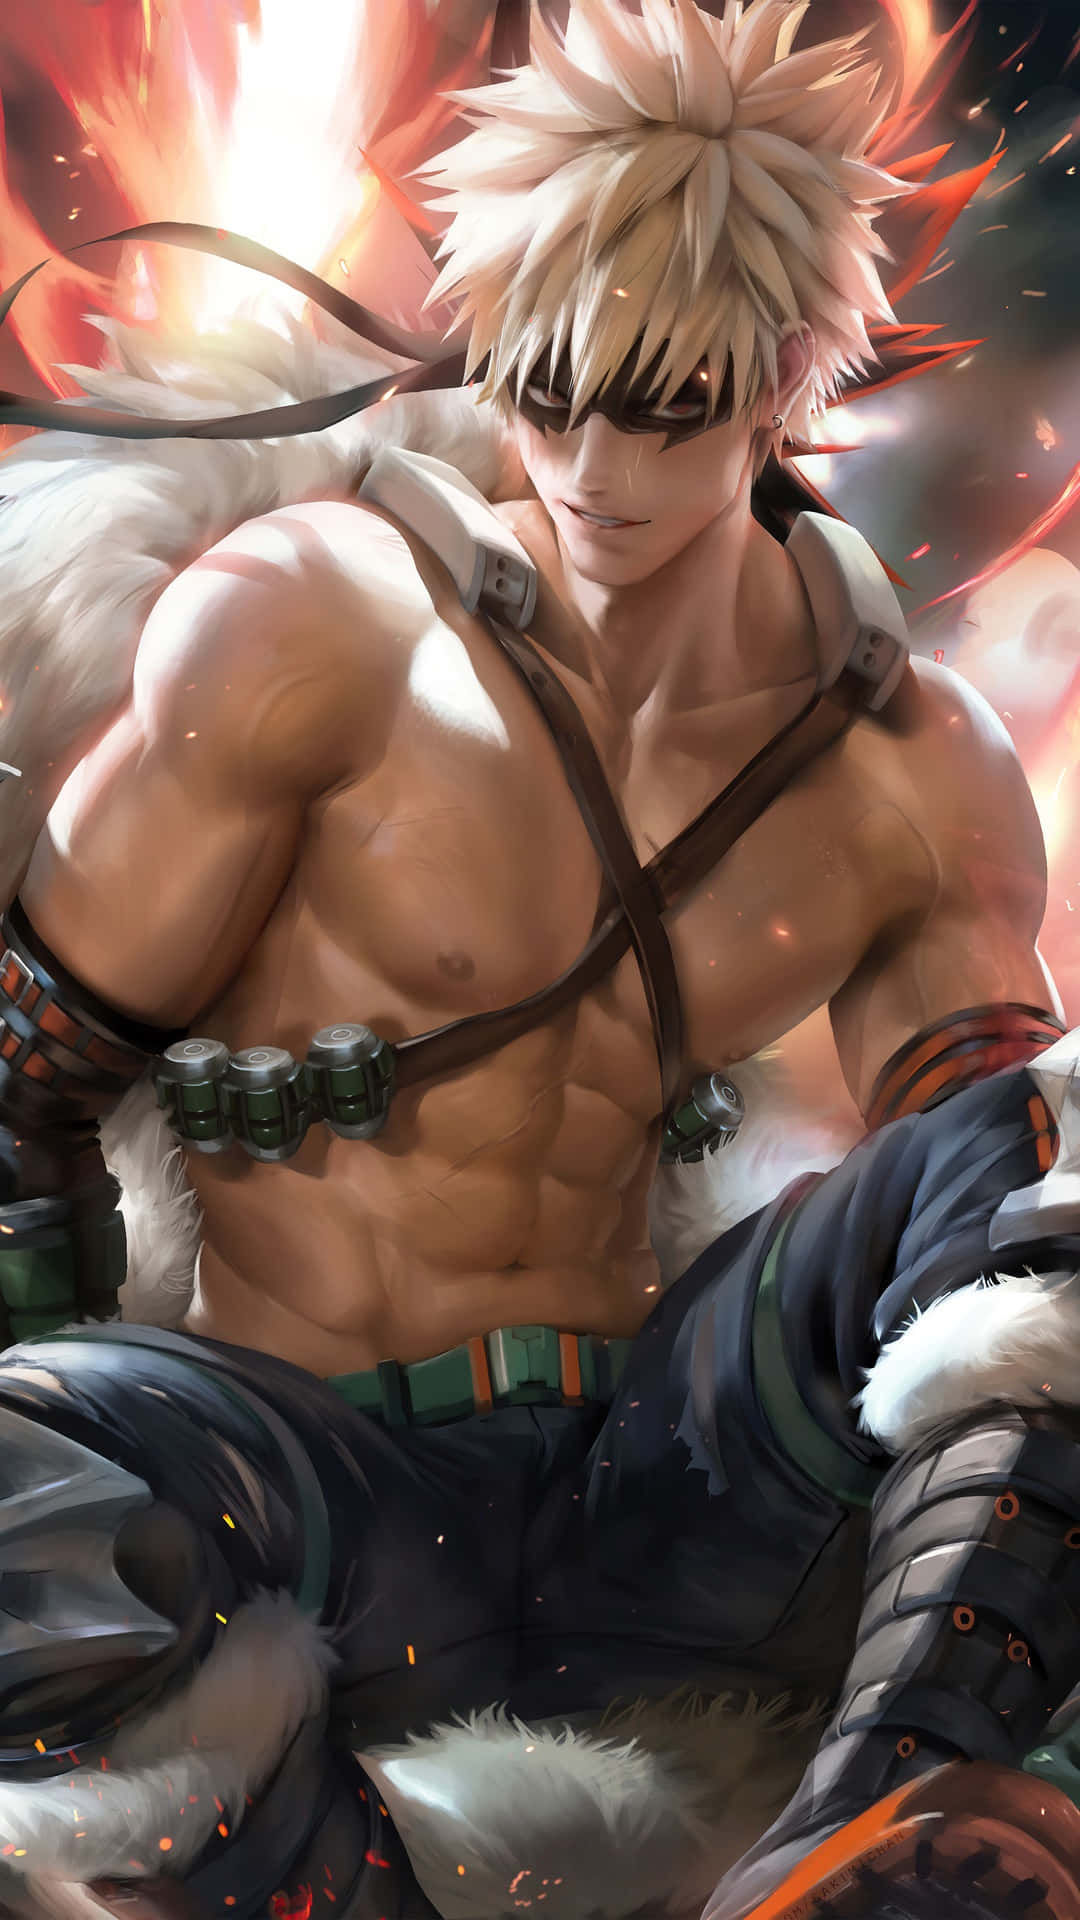 Anime Muscular Character Art Wallpaper